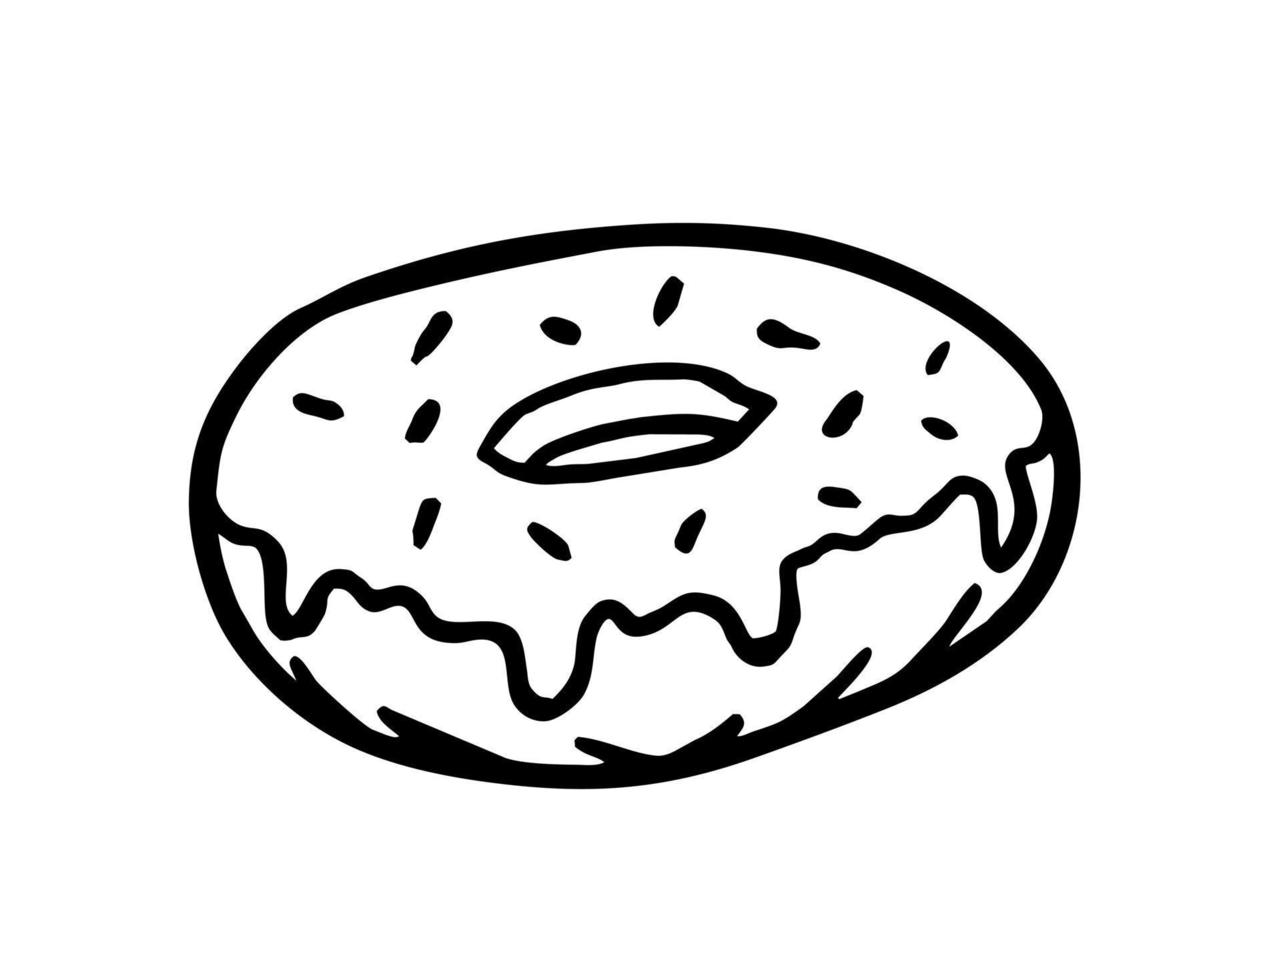 donut is een handgetekende bakkerij-elementvector in de stijl van een doodle-schets. voor café- en bakkerijmenu's vector